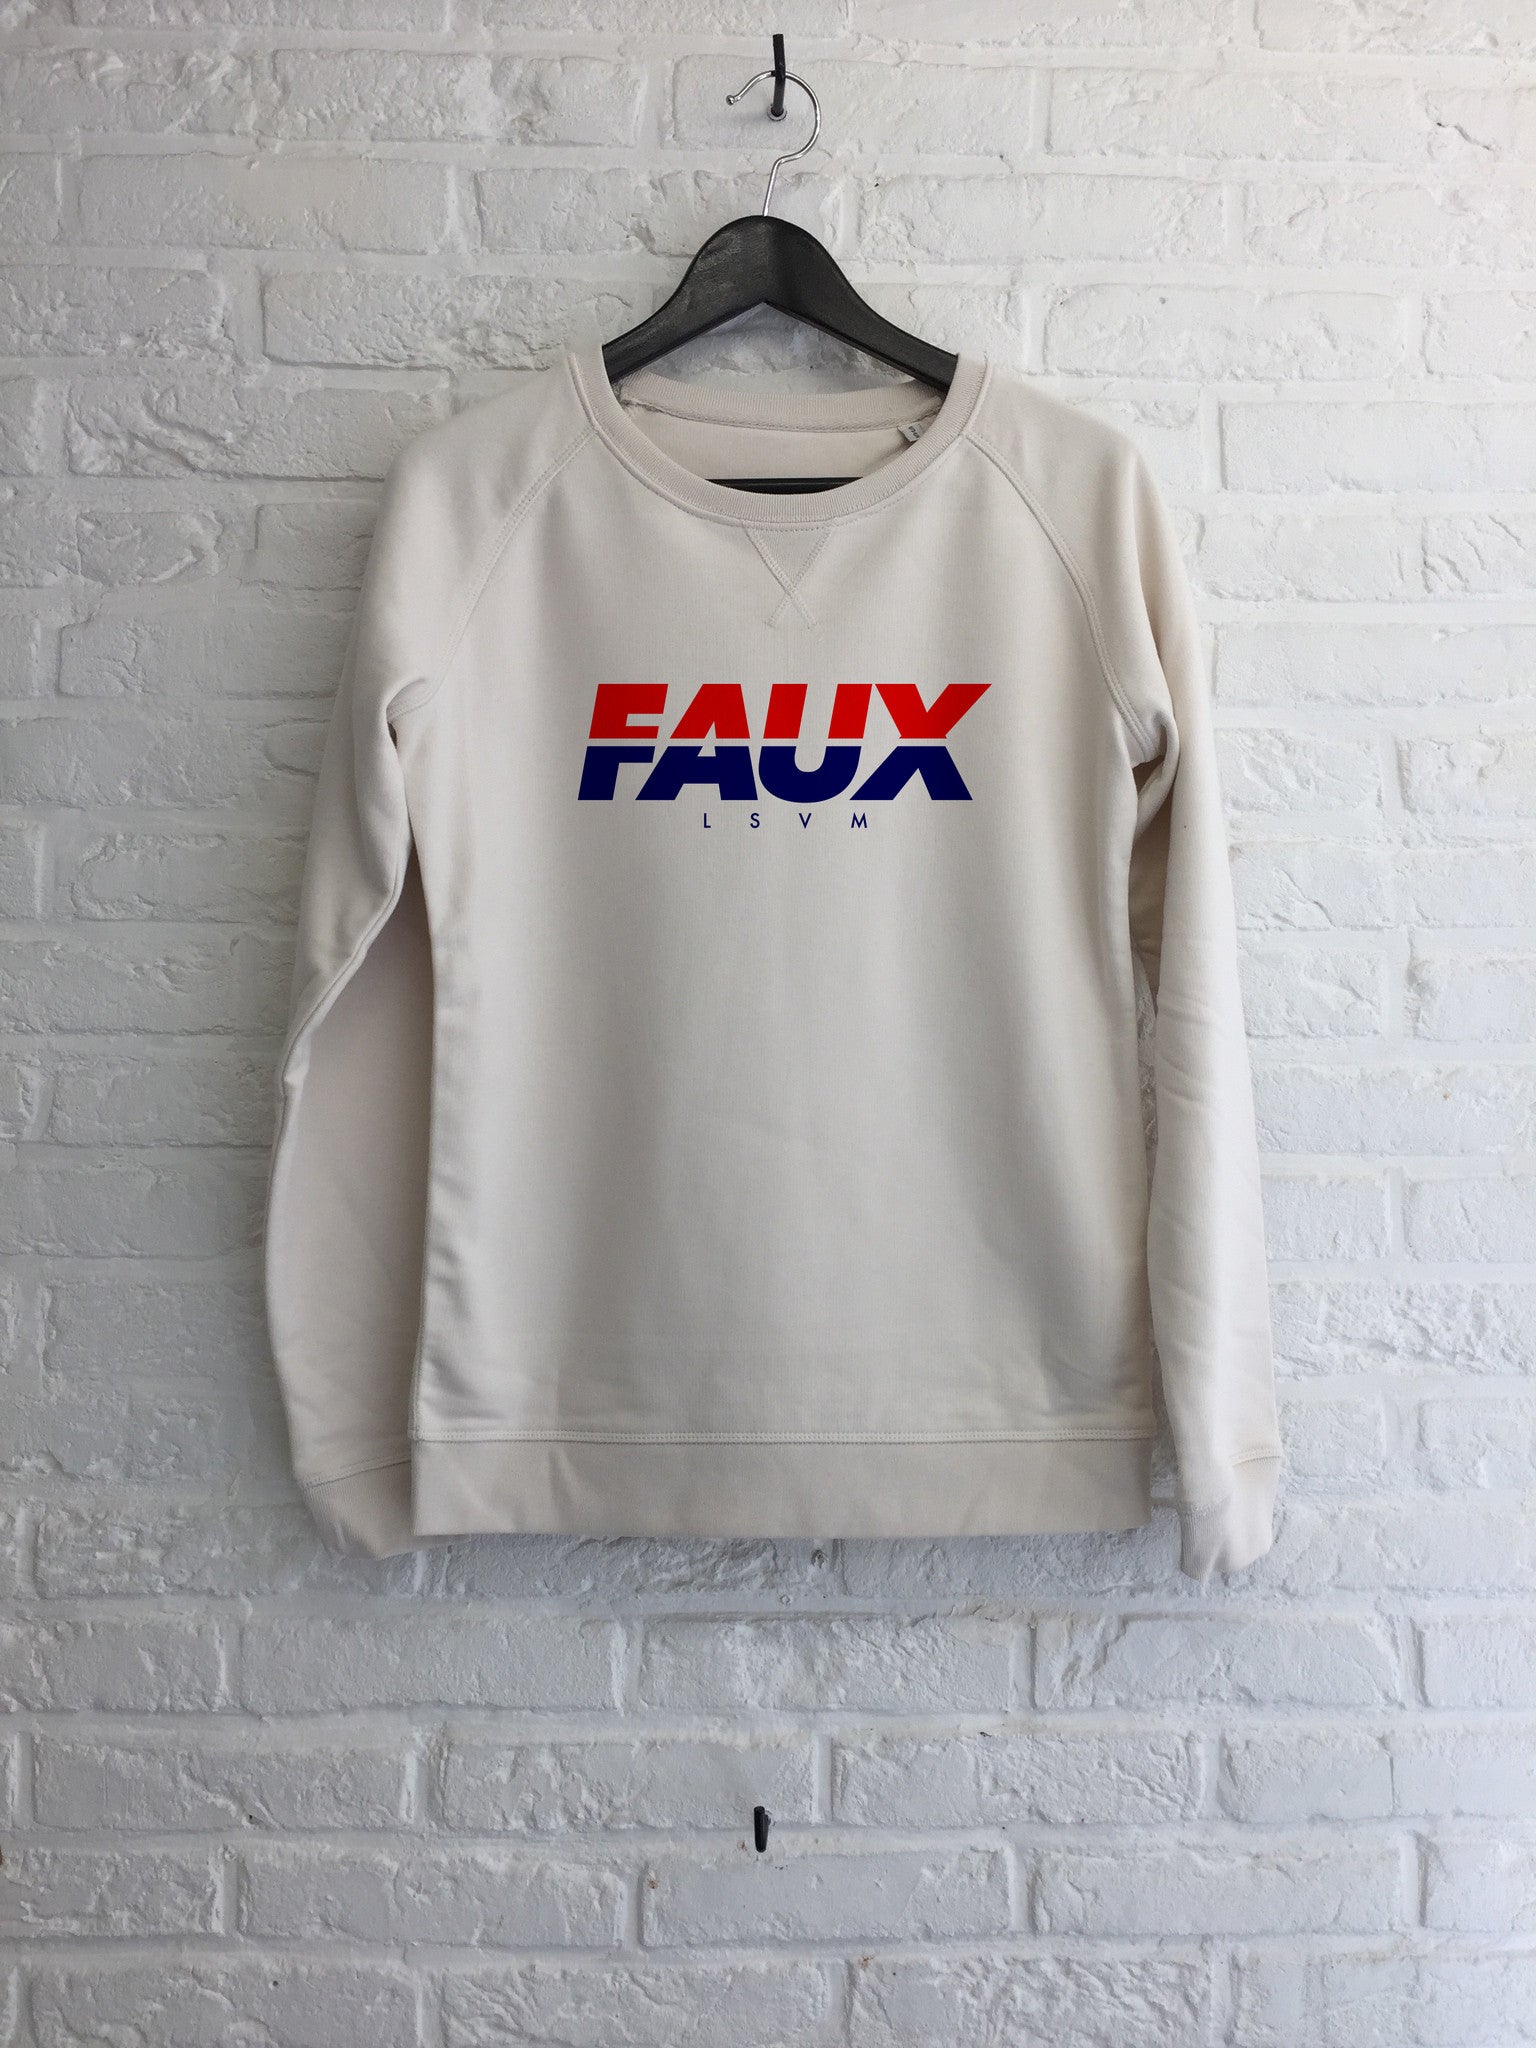 FAUX Cainri - Sweat - Femme-Sweat shirts-Atelier Amelot